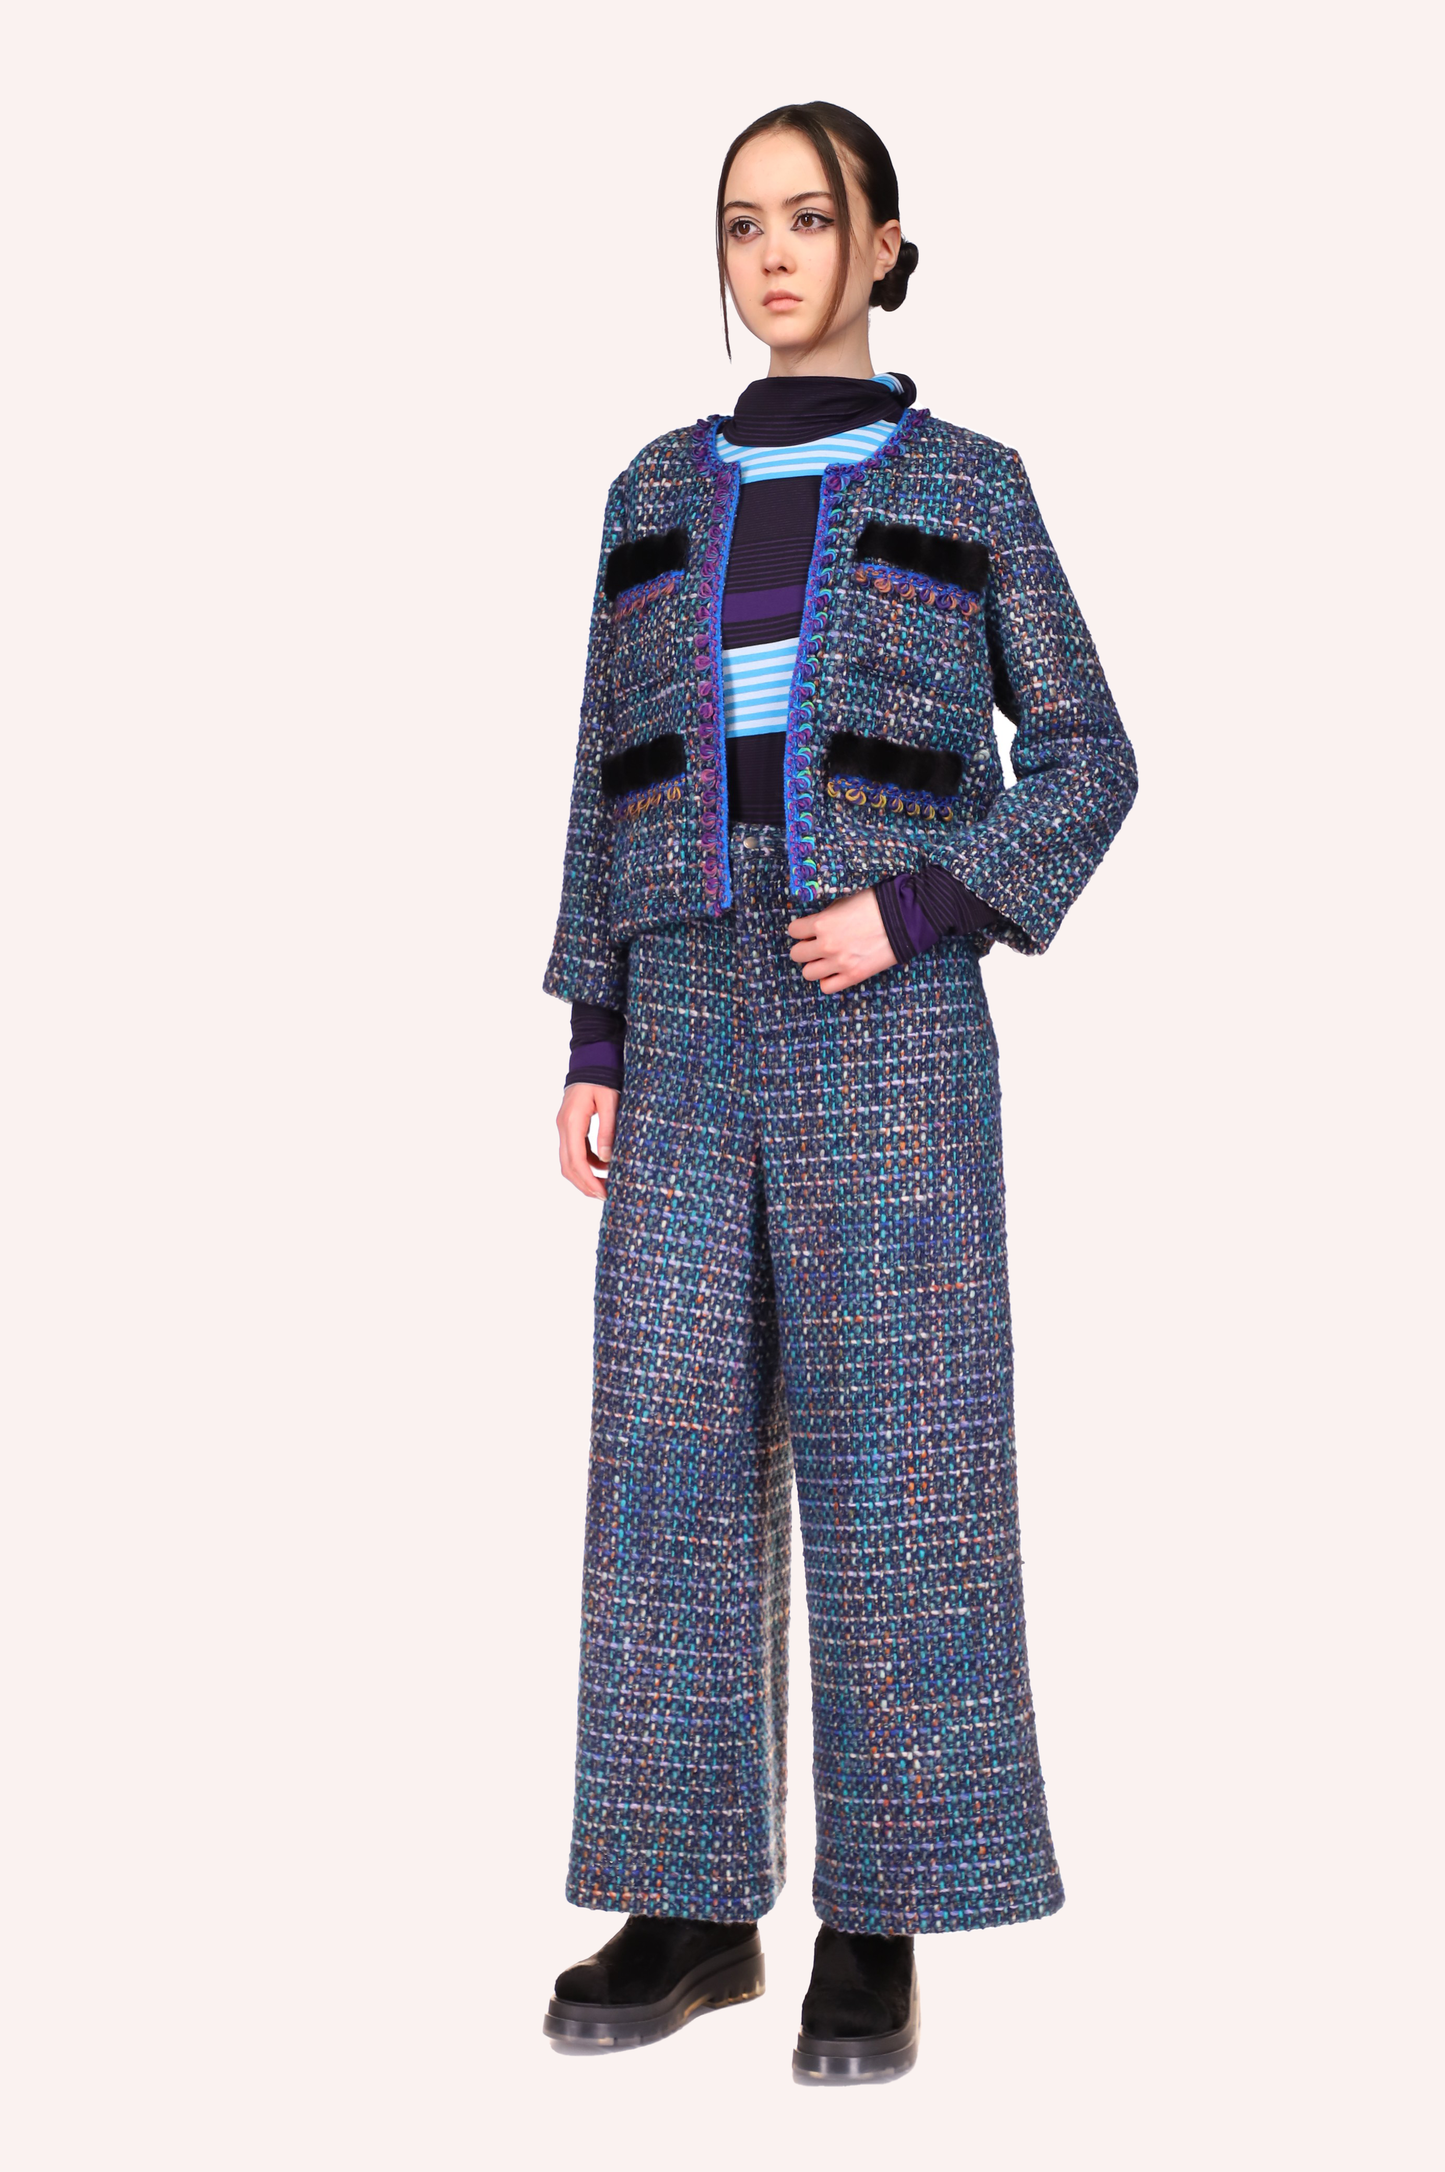 Pantaloni in tweed Turchese, pantaloni larghi, lunghi fino alle caviglie, bottone argentato per la chiusura, cerniera anteriore nascosta.